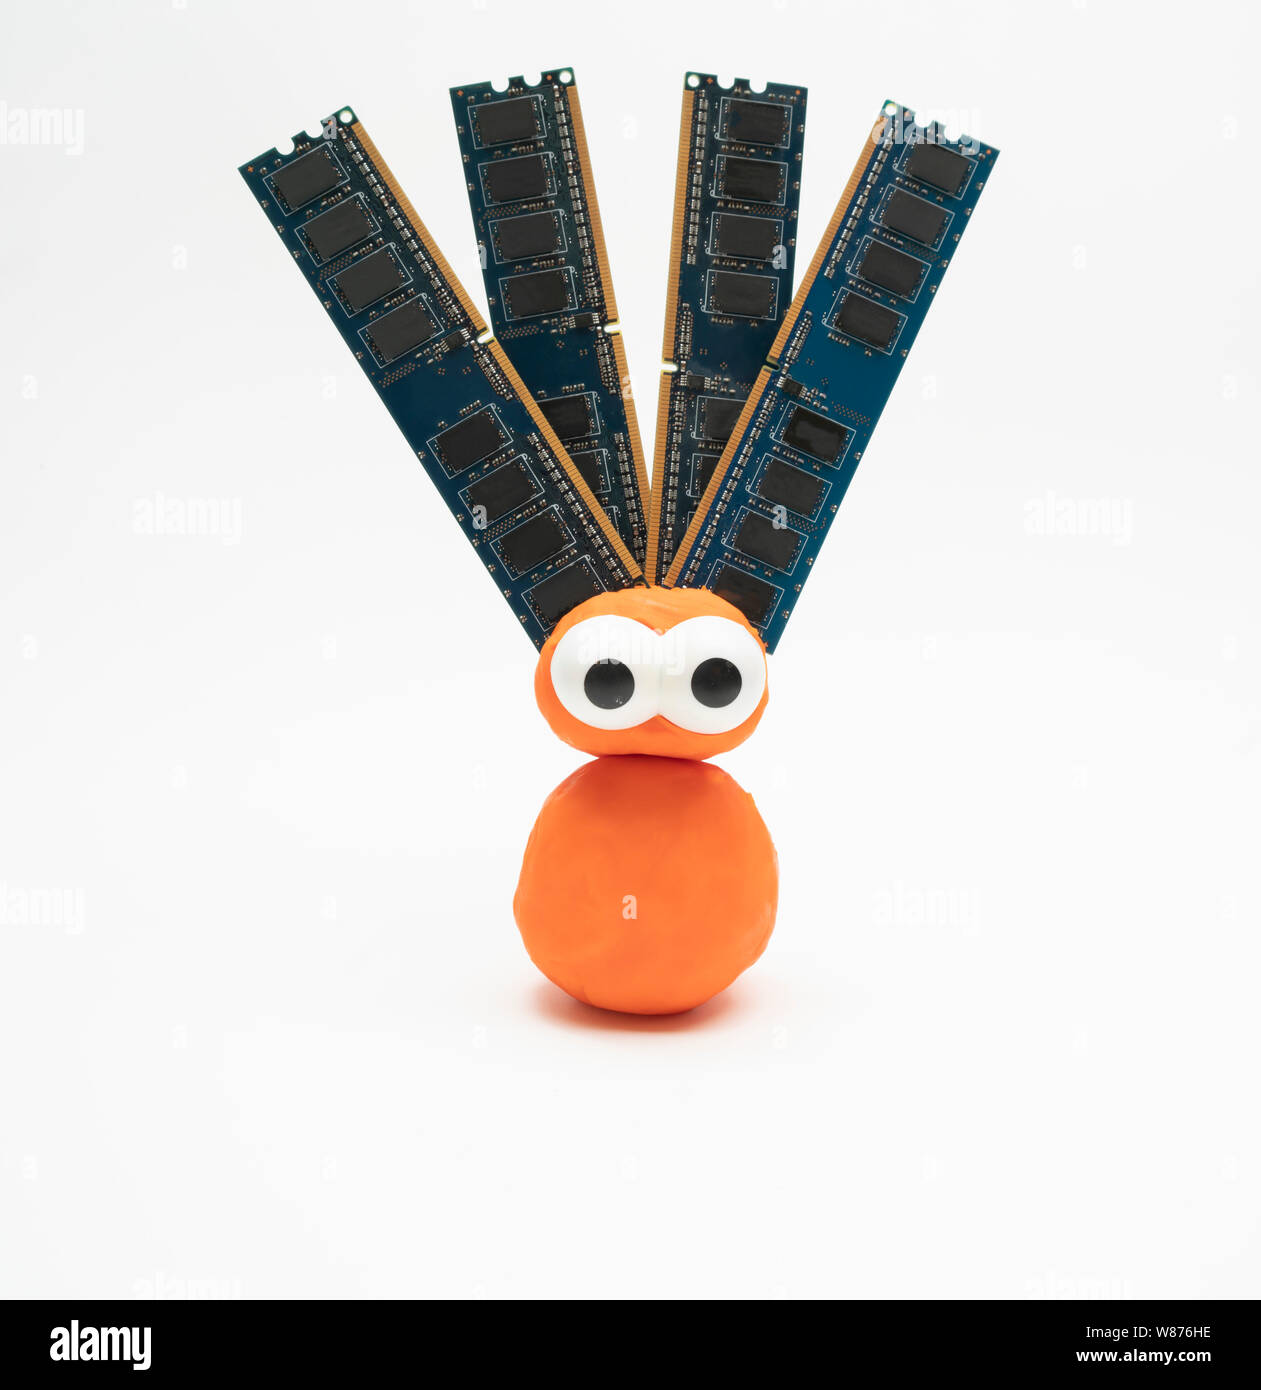 Pâte à modeler un blob orange avec les yeux avec les cartes RAM de l'ordinateur dépasse de chaque côté de la tête - intelligence artificielle ; intelligence ; être hybride intégré Banque D'Images